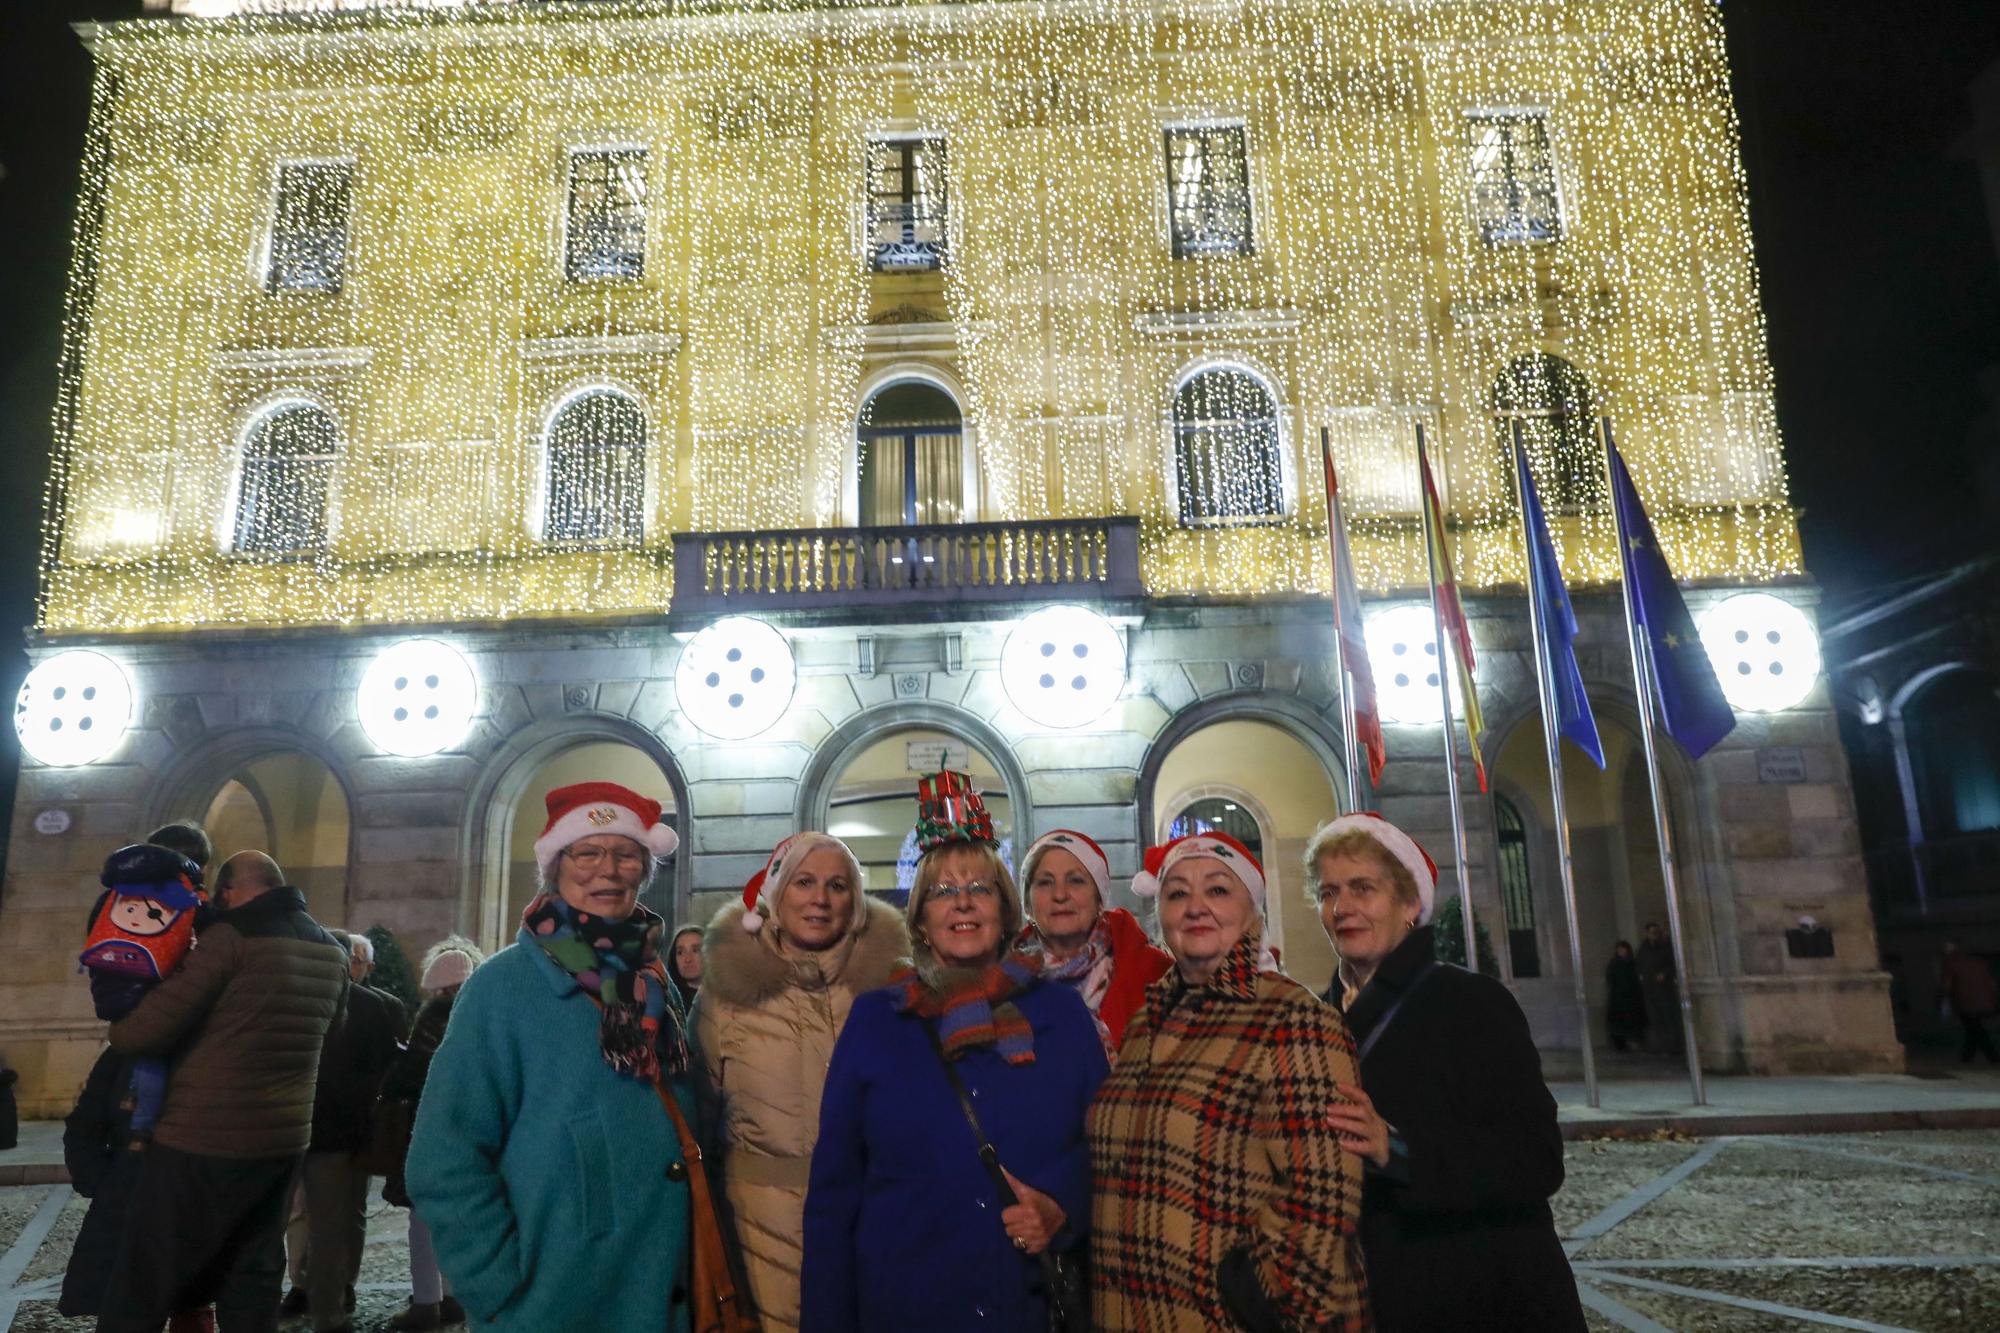 Encendido de las luces navideñas en Gijón